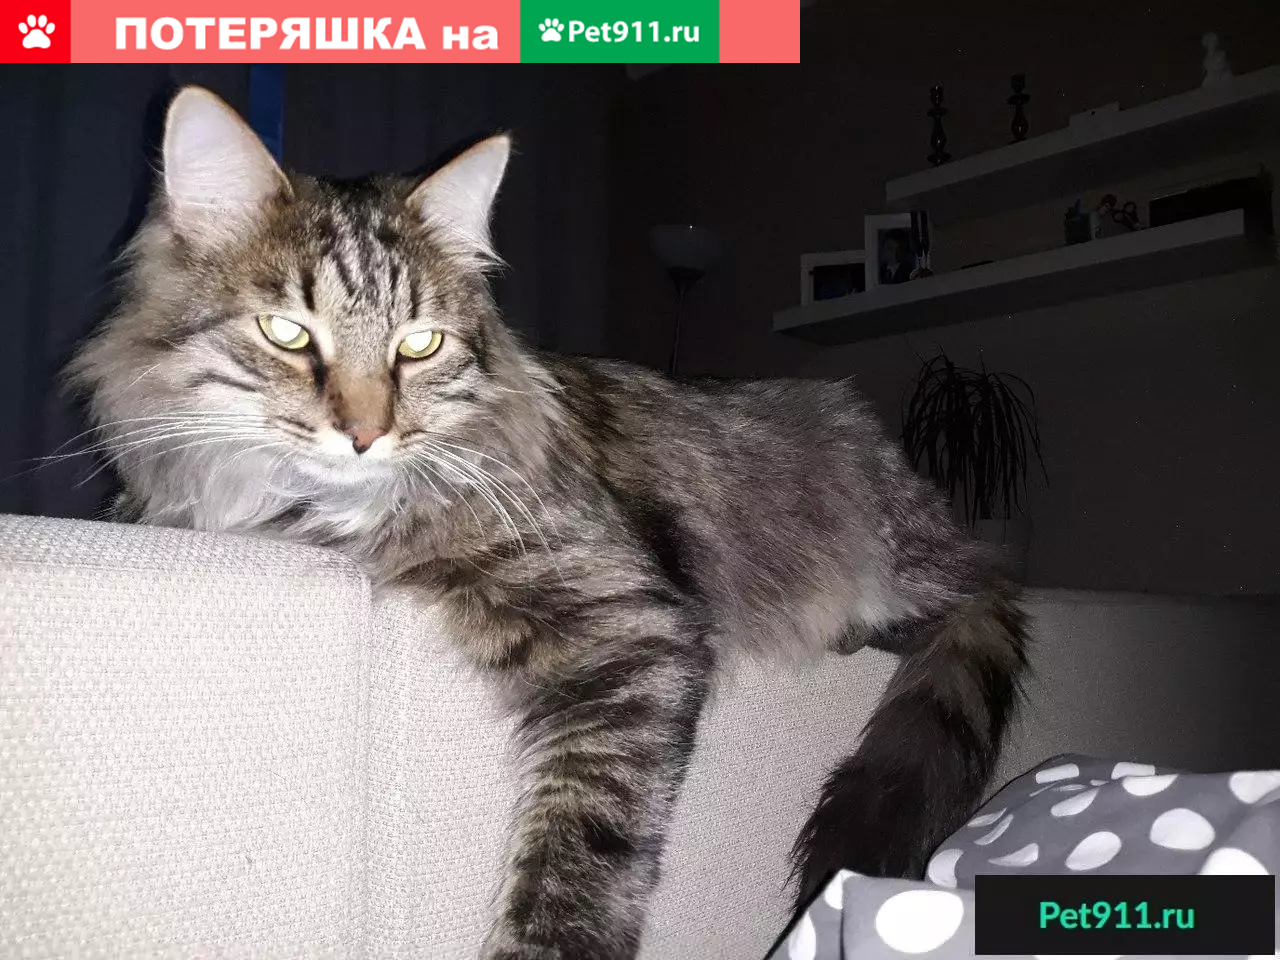 Пропал кот КУБА в п. Быково, Подольск.